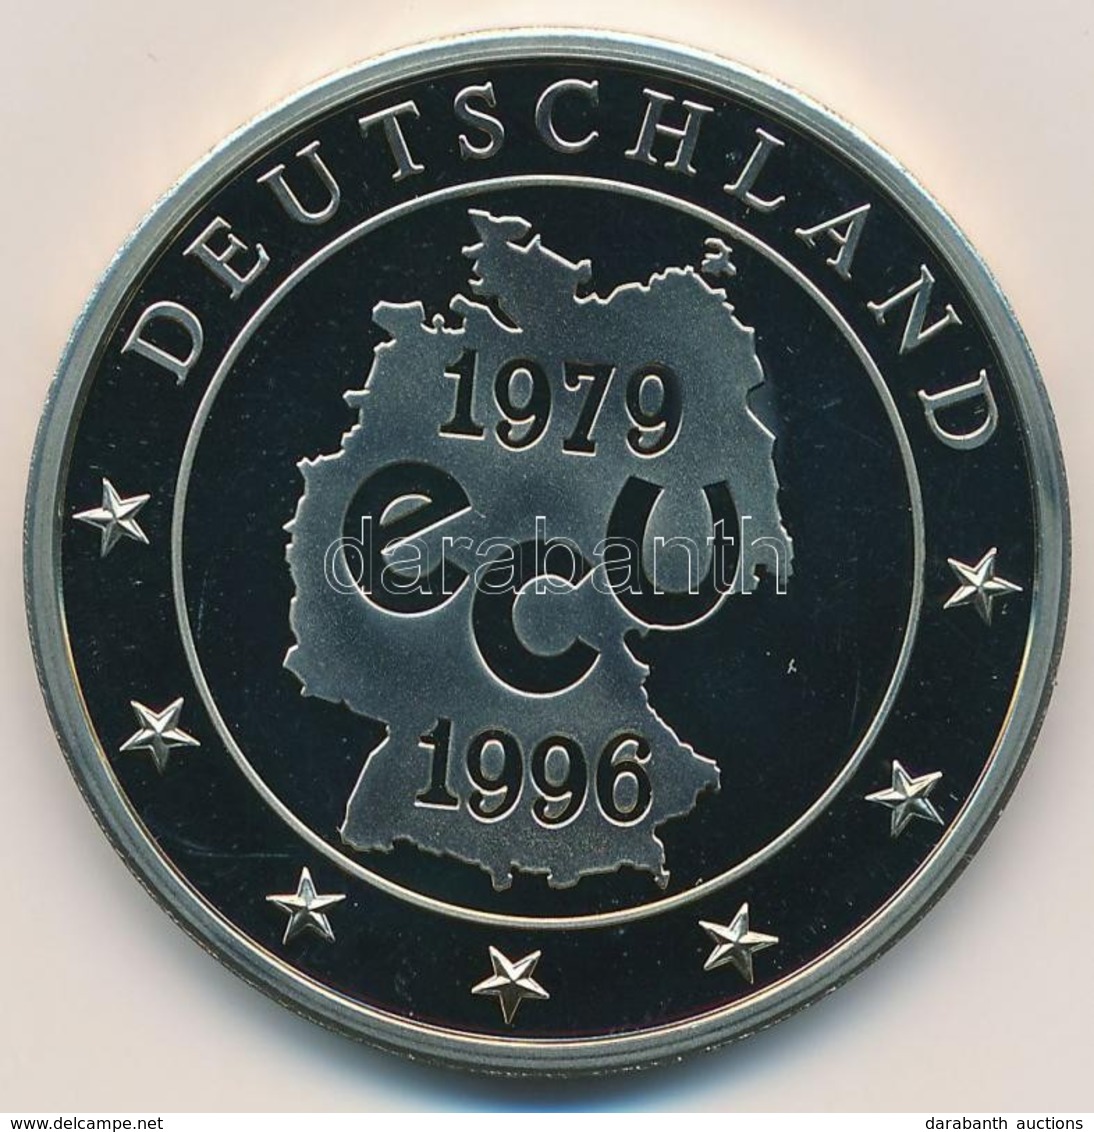 Németország 1996. 'Az Utolsó Német ECU' Cu-Ni Emlékérem Német Nyelvű Tanúsítvánnyal (27,7g/40mm) T:1,1-
Germany 1996. 'D - Non Classés